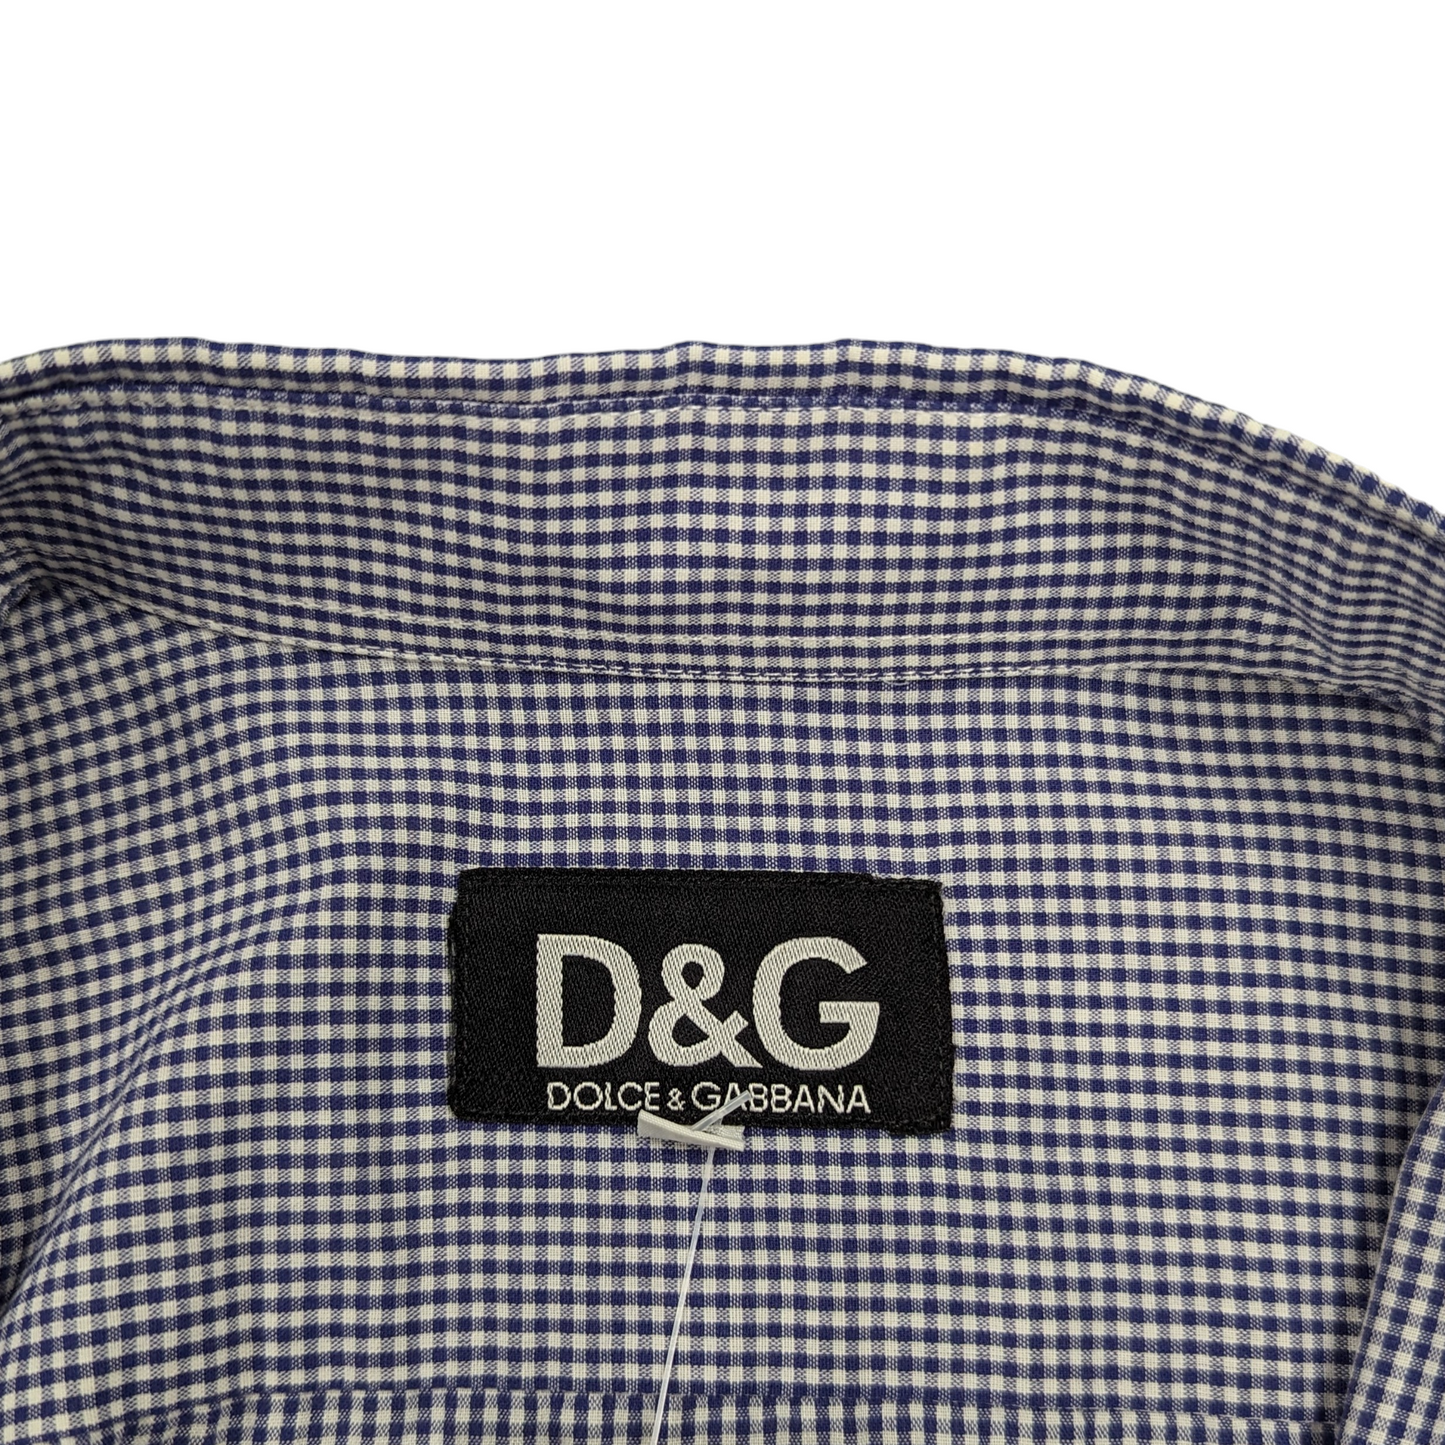 00s Dolce & Gabbana Check Shirt Size XL